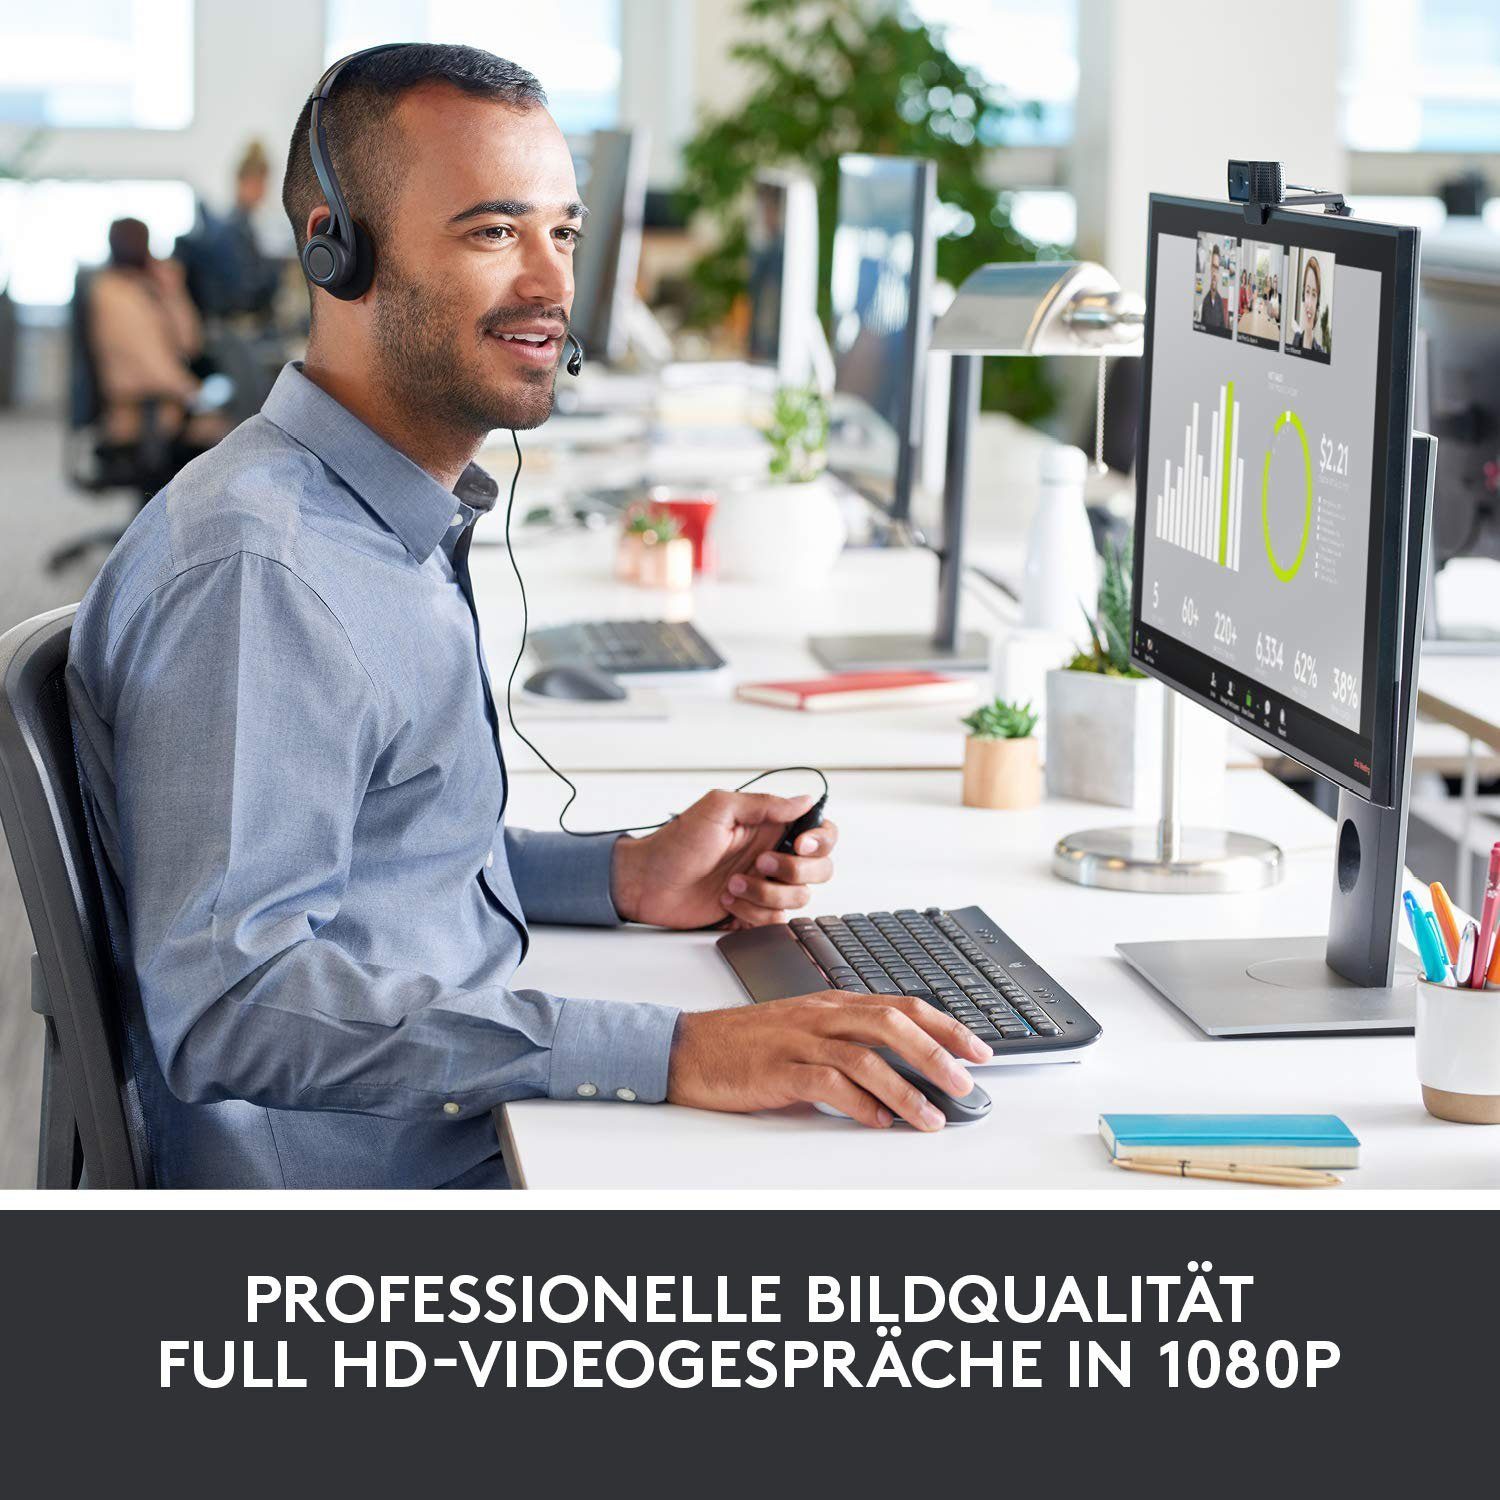 Logitech C920 HD (Full PRO HD) Webcam